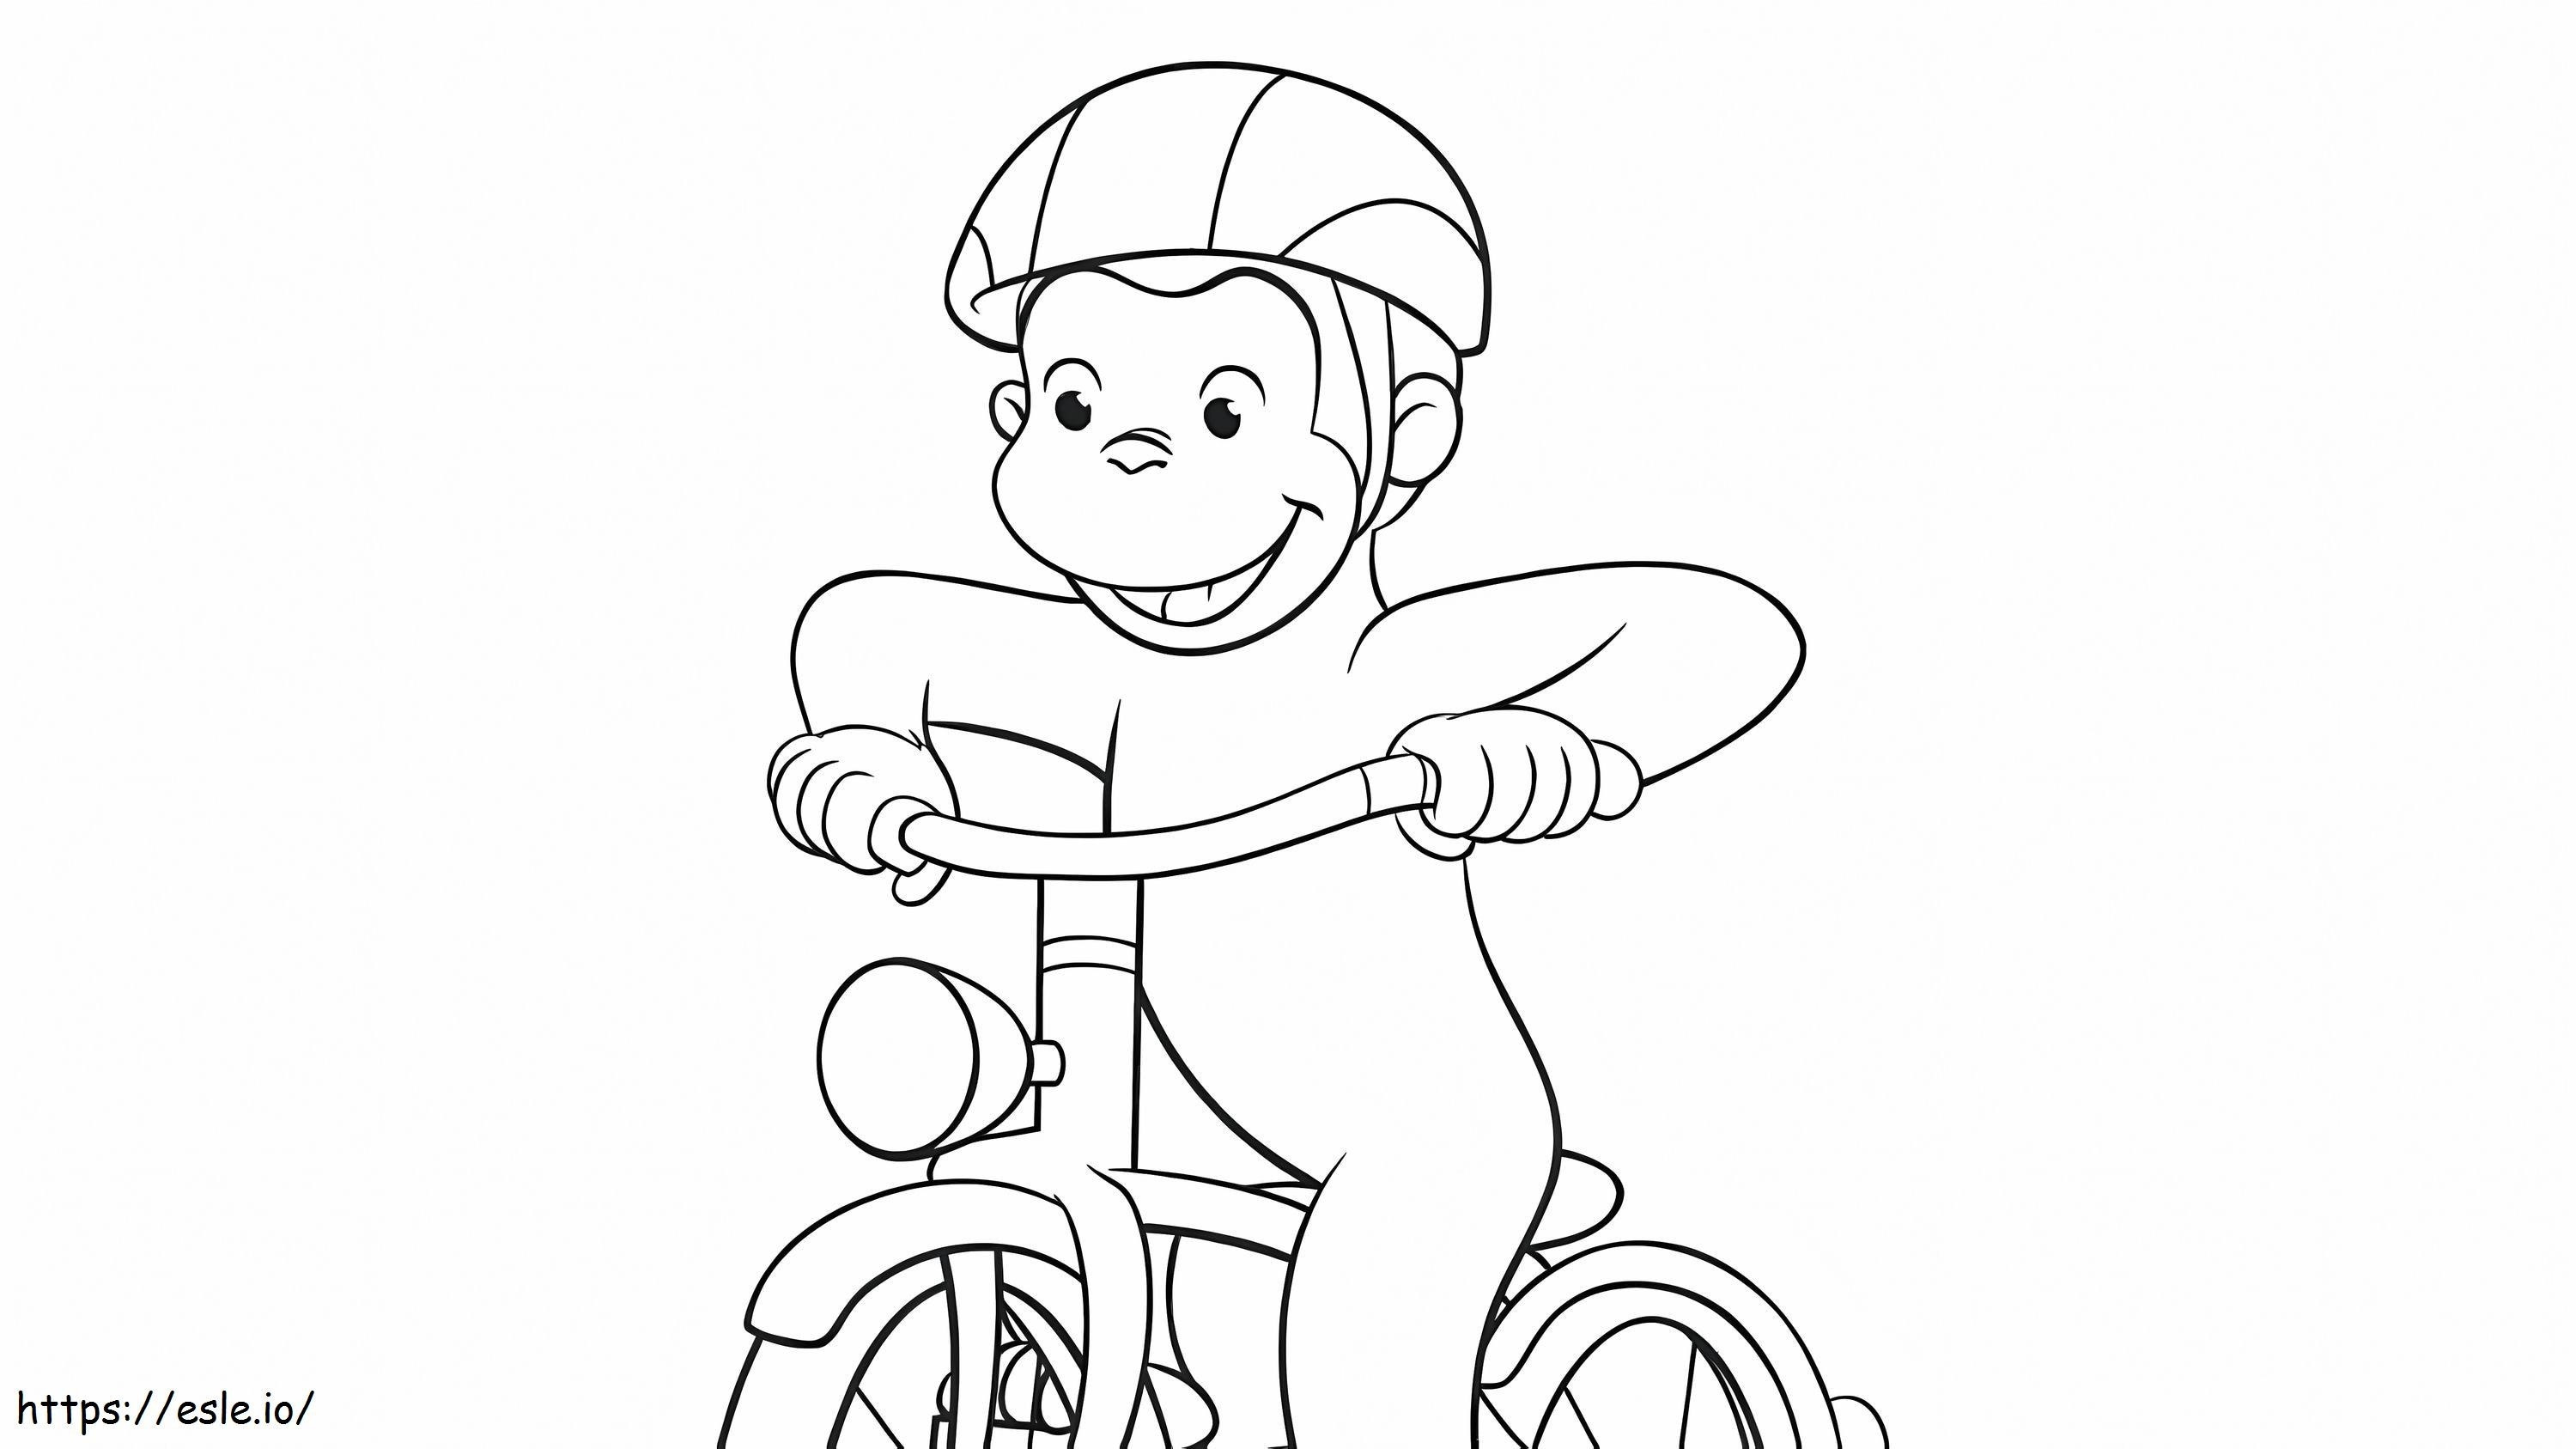 Mono Cyclist coloring page